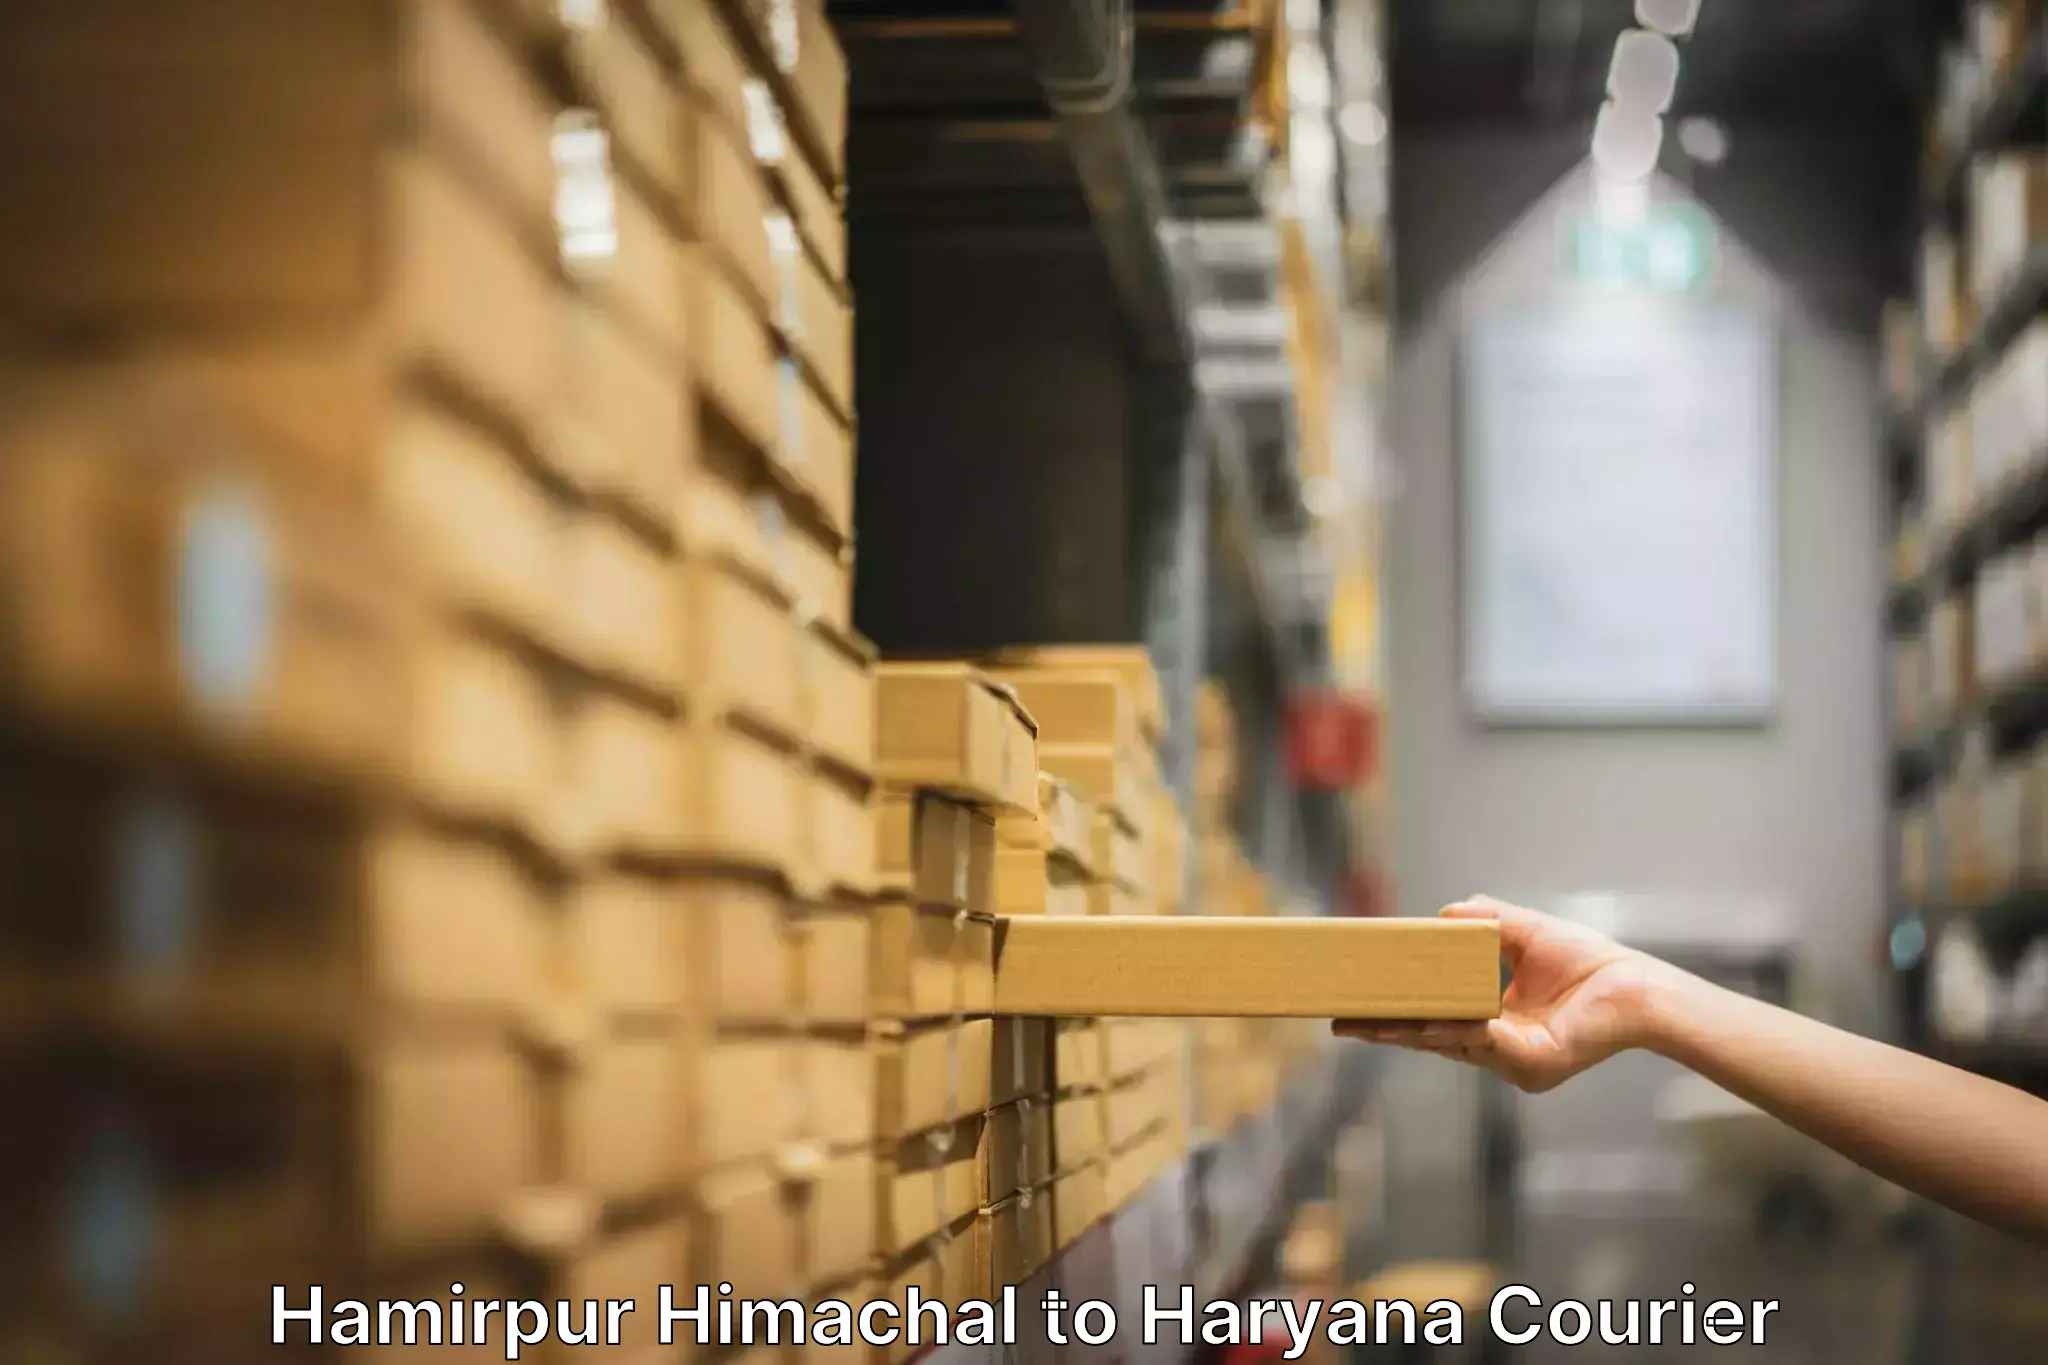 Expert goods movers Hamirpur Himachal to Kurukshetra University